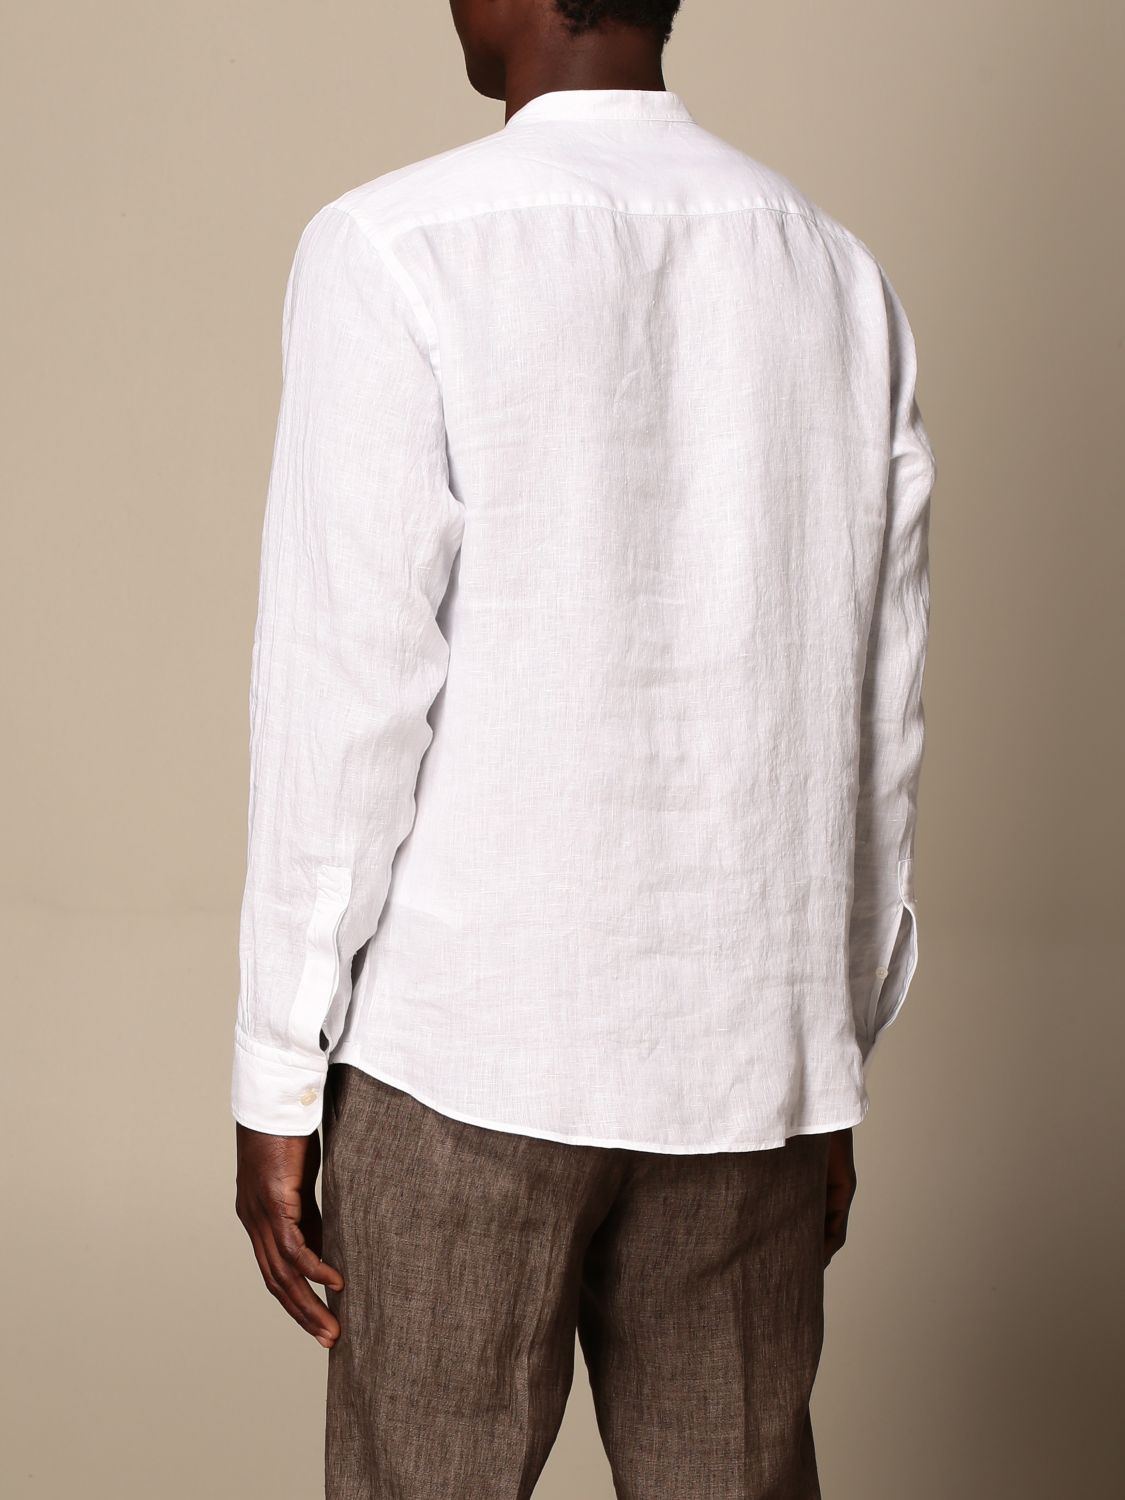 Camicia Z Zegna: Camicia Z Zegna in lino lavato con collo alla coreana bianco 3